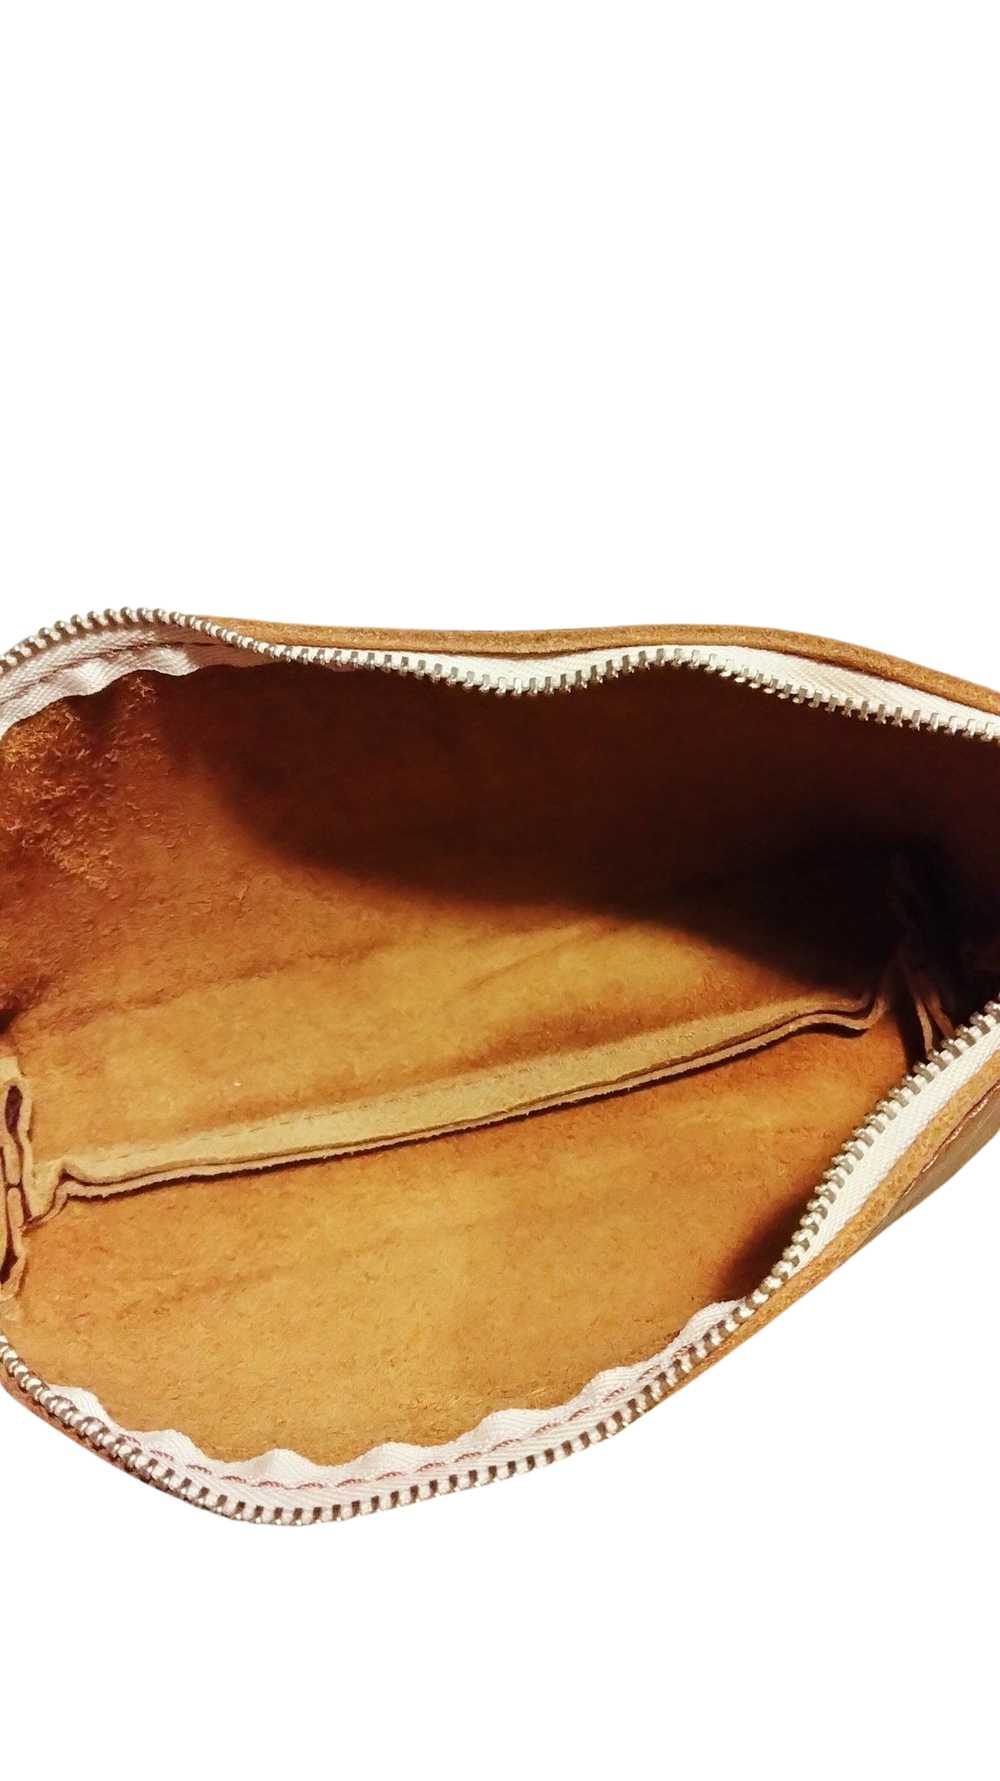 Portland Leather Nutmeg Utility Bag Premium - image 3